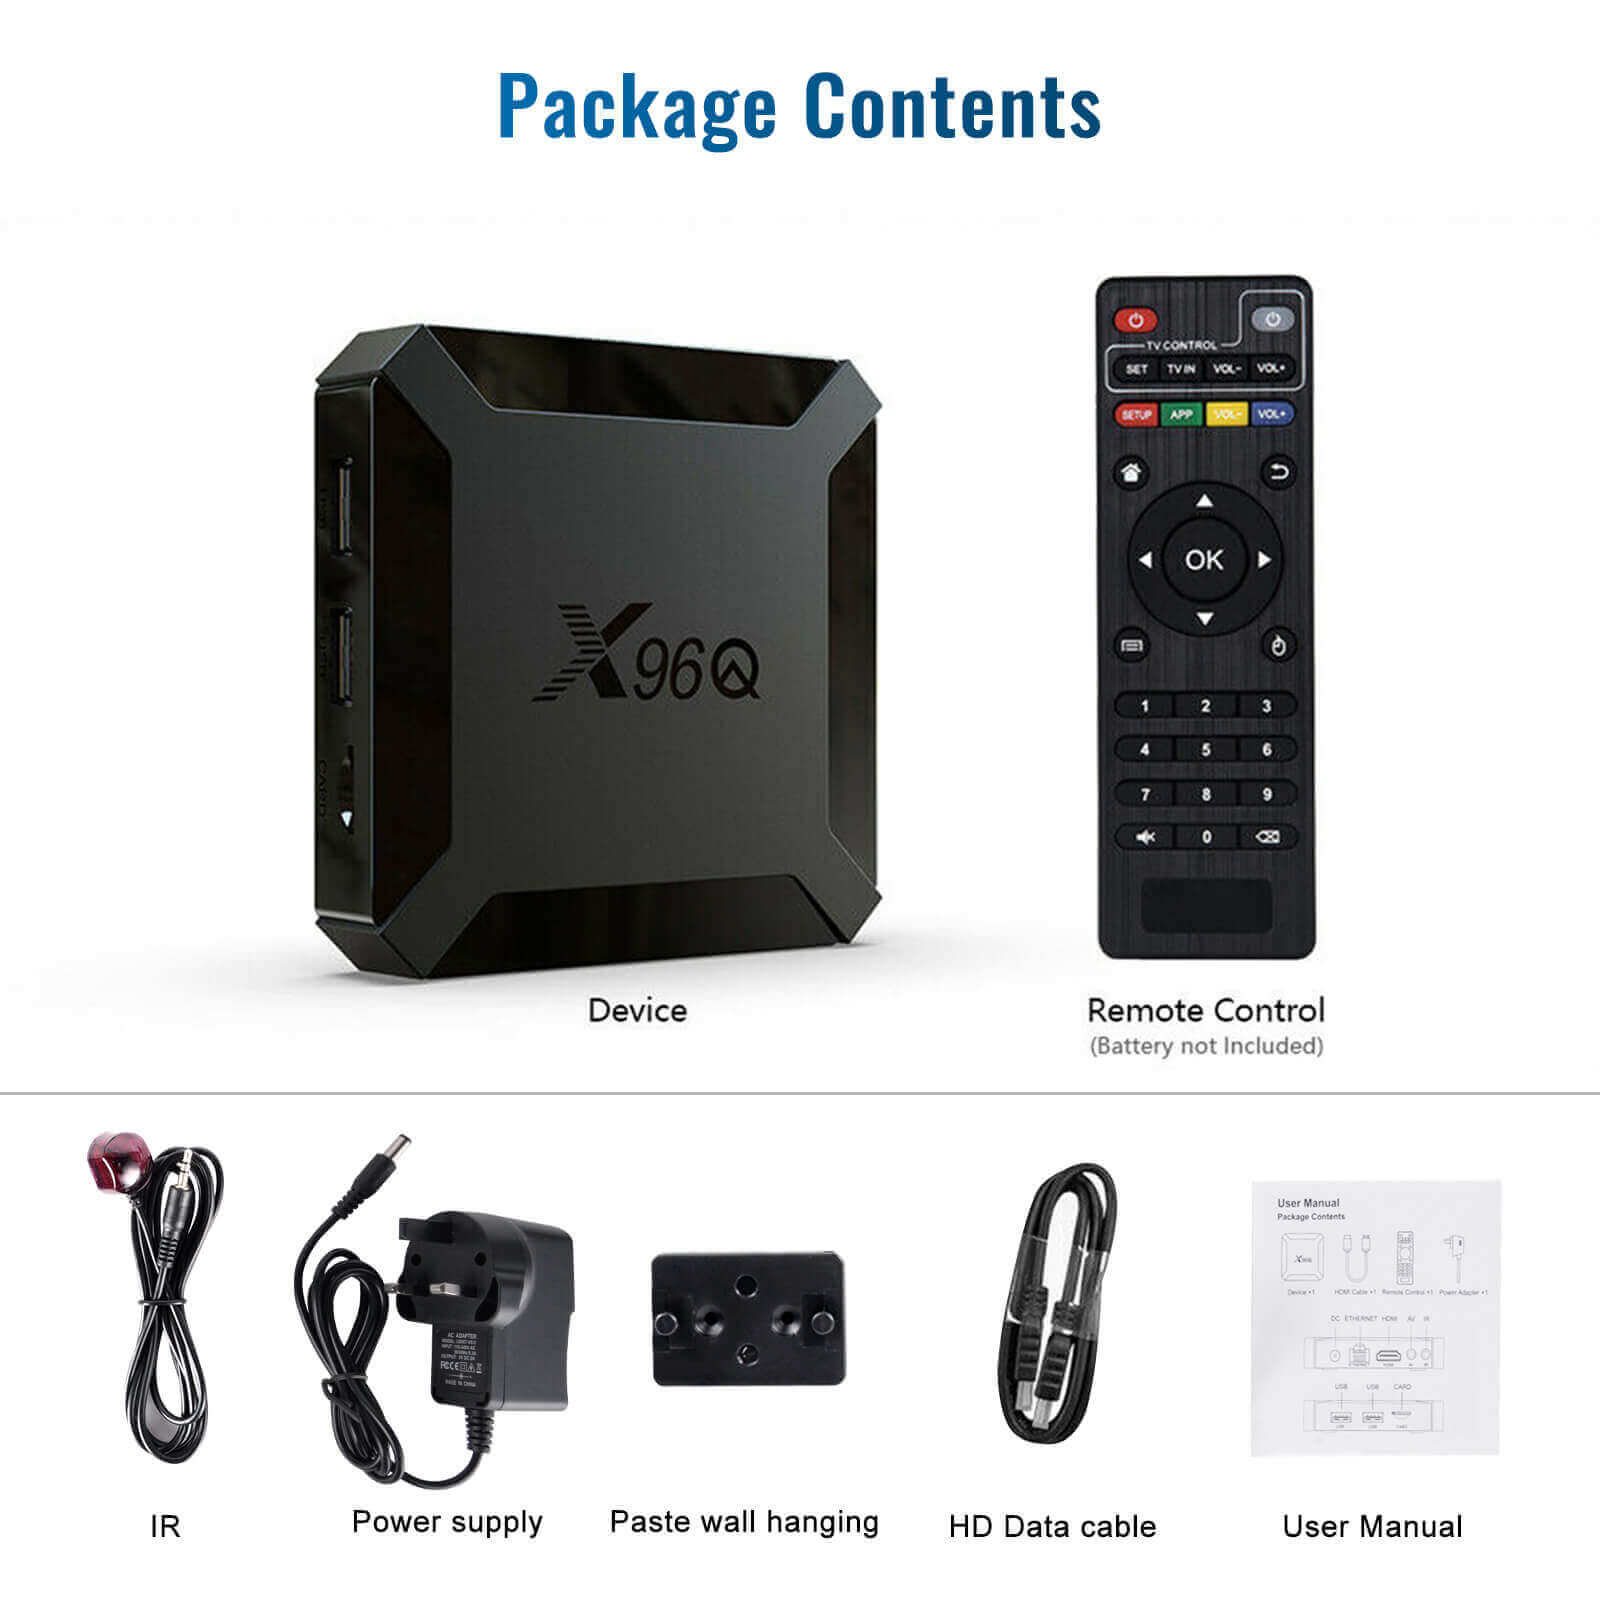 XGODY X96Q Android 10 Smart TV BOX, Supports Netflix, Hulu, Flixster, Youtube